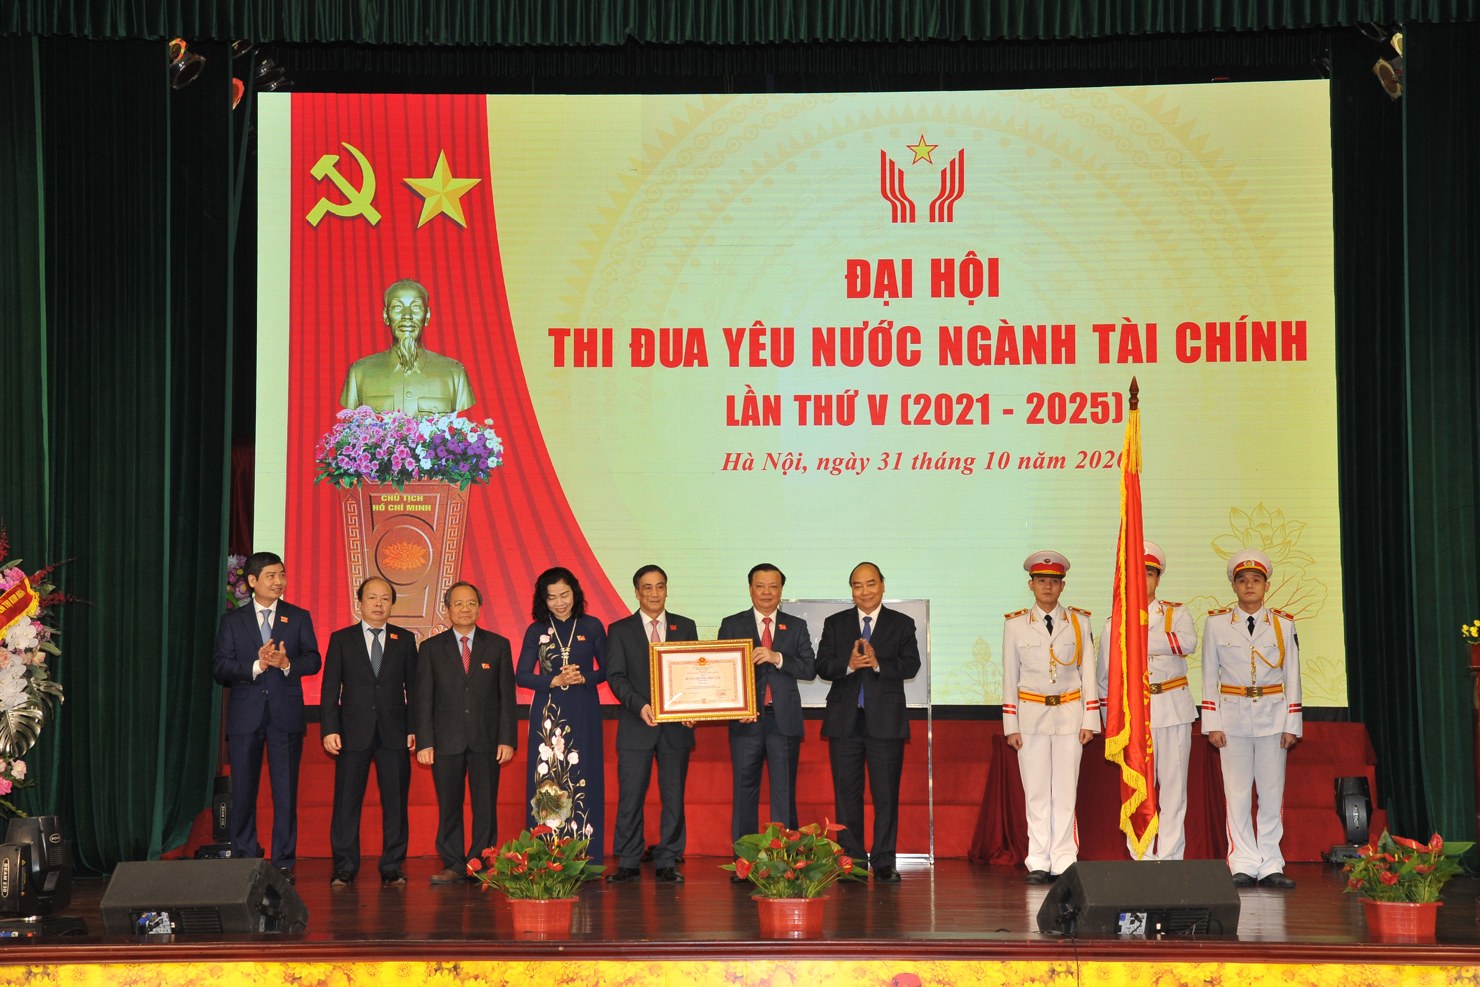 Các đồng chí Lãnh đạo Bộ Tài chính trên bục danh dự đón nhận Huân chương Độc lập hạng Nhất.